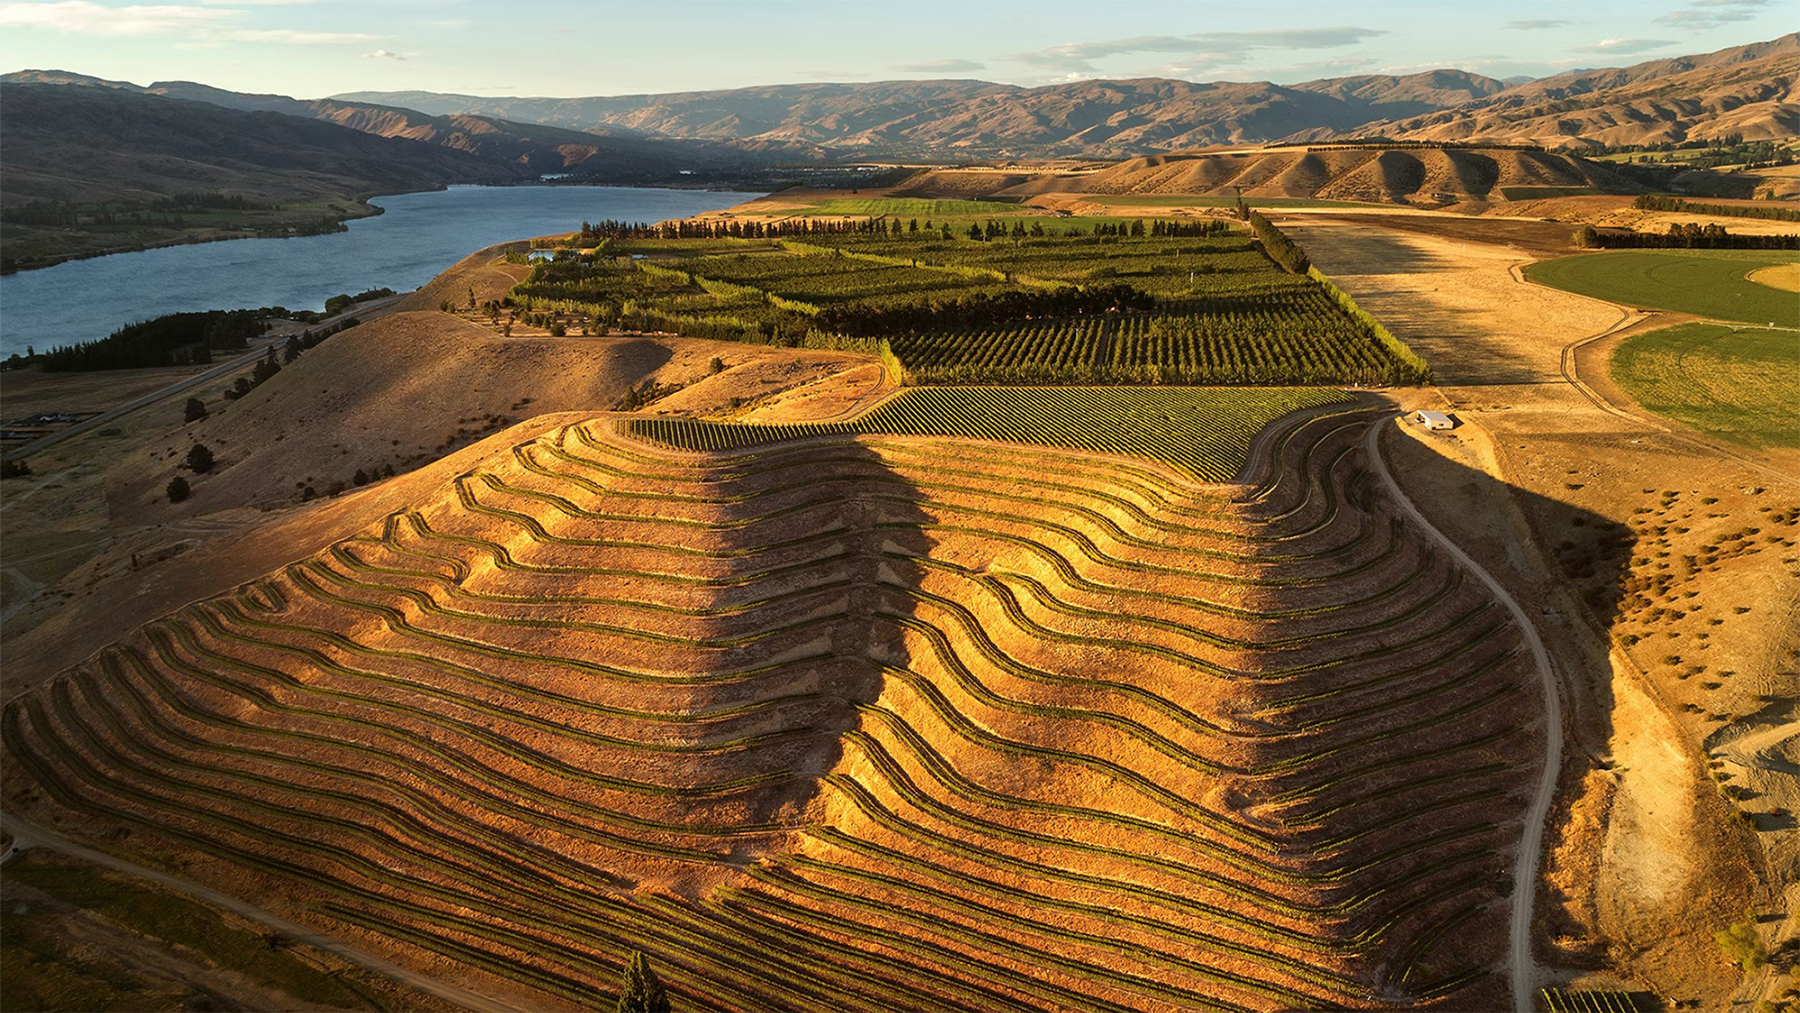 Rothschild To Acquire New Zealand Winery Akarua